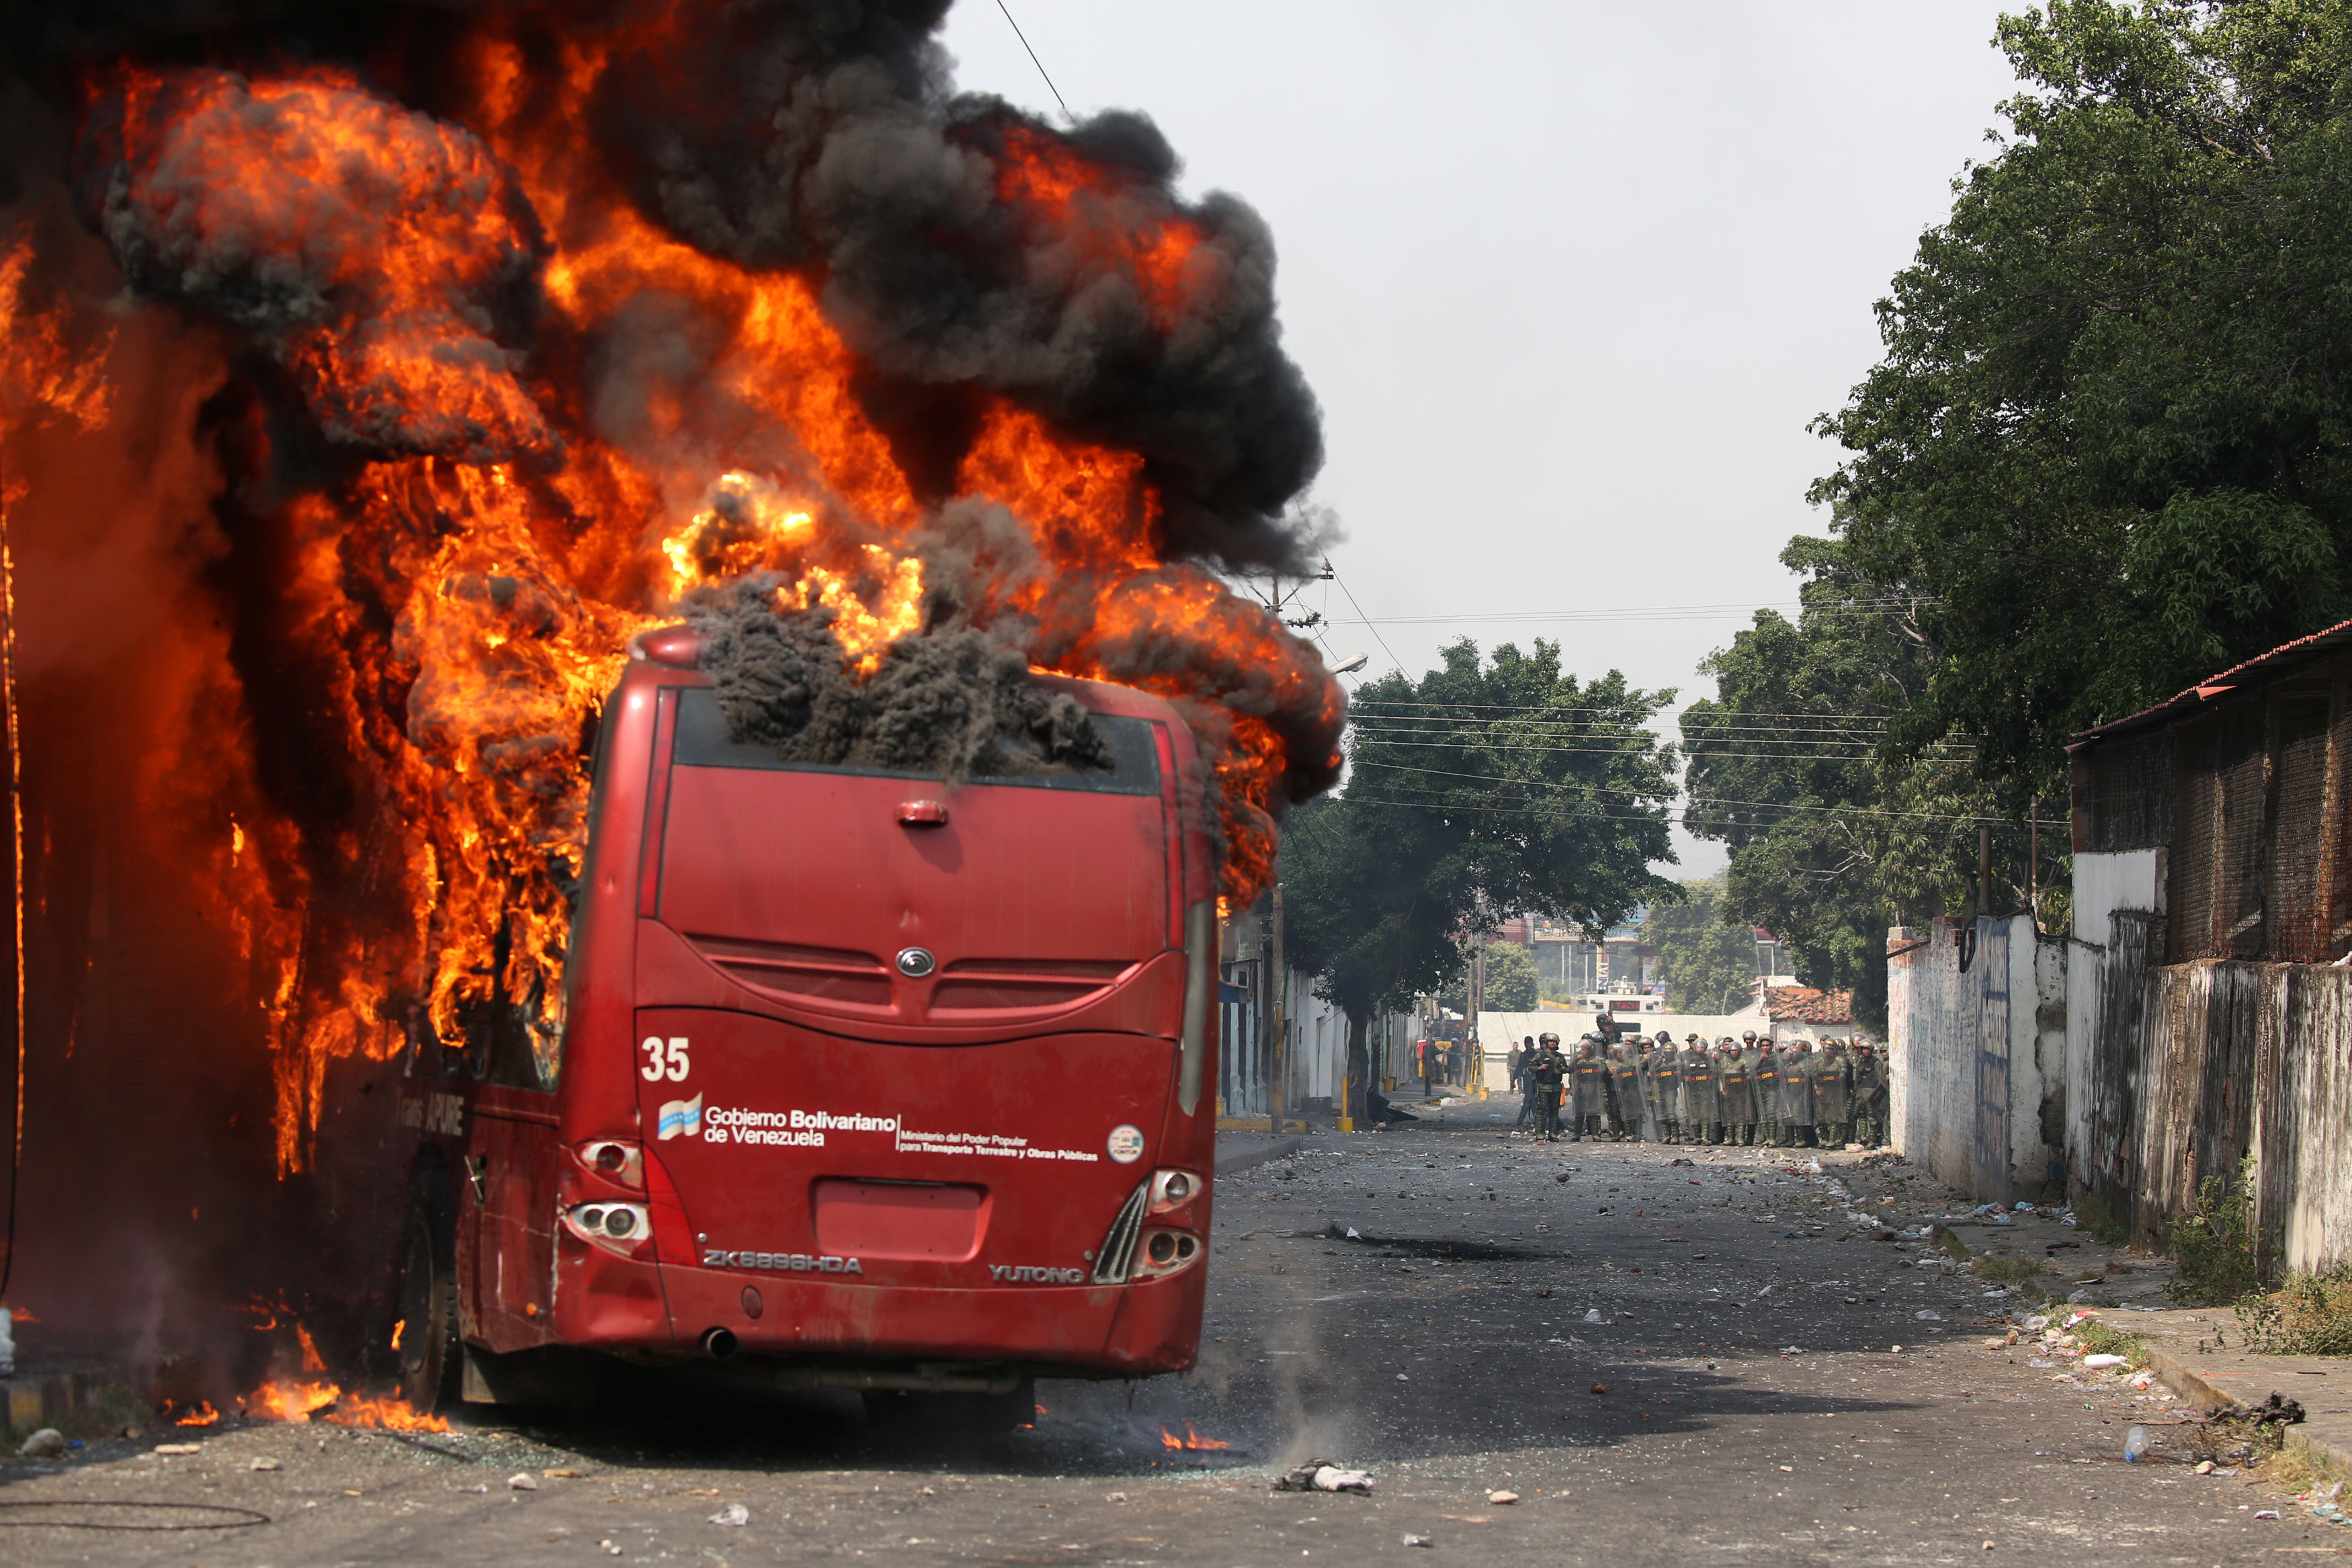 EN FOTOS: Manifestantes queman autobús rojo rojito en Ureña